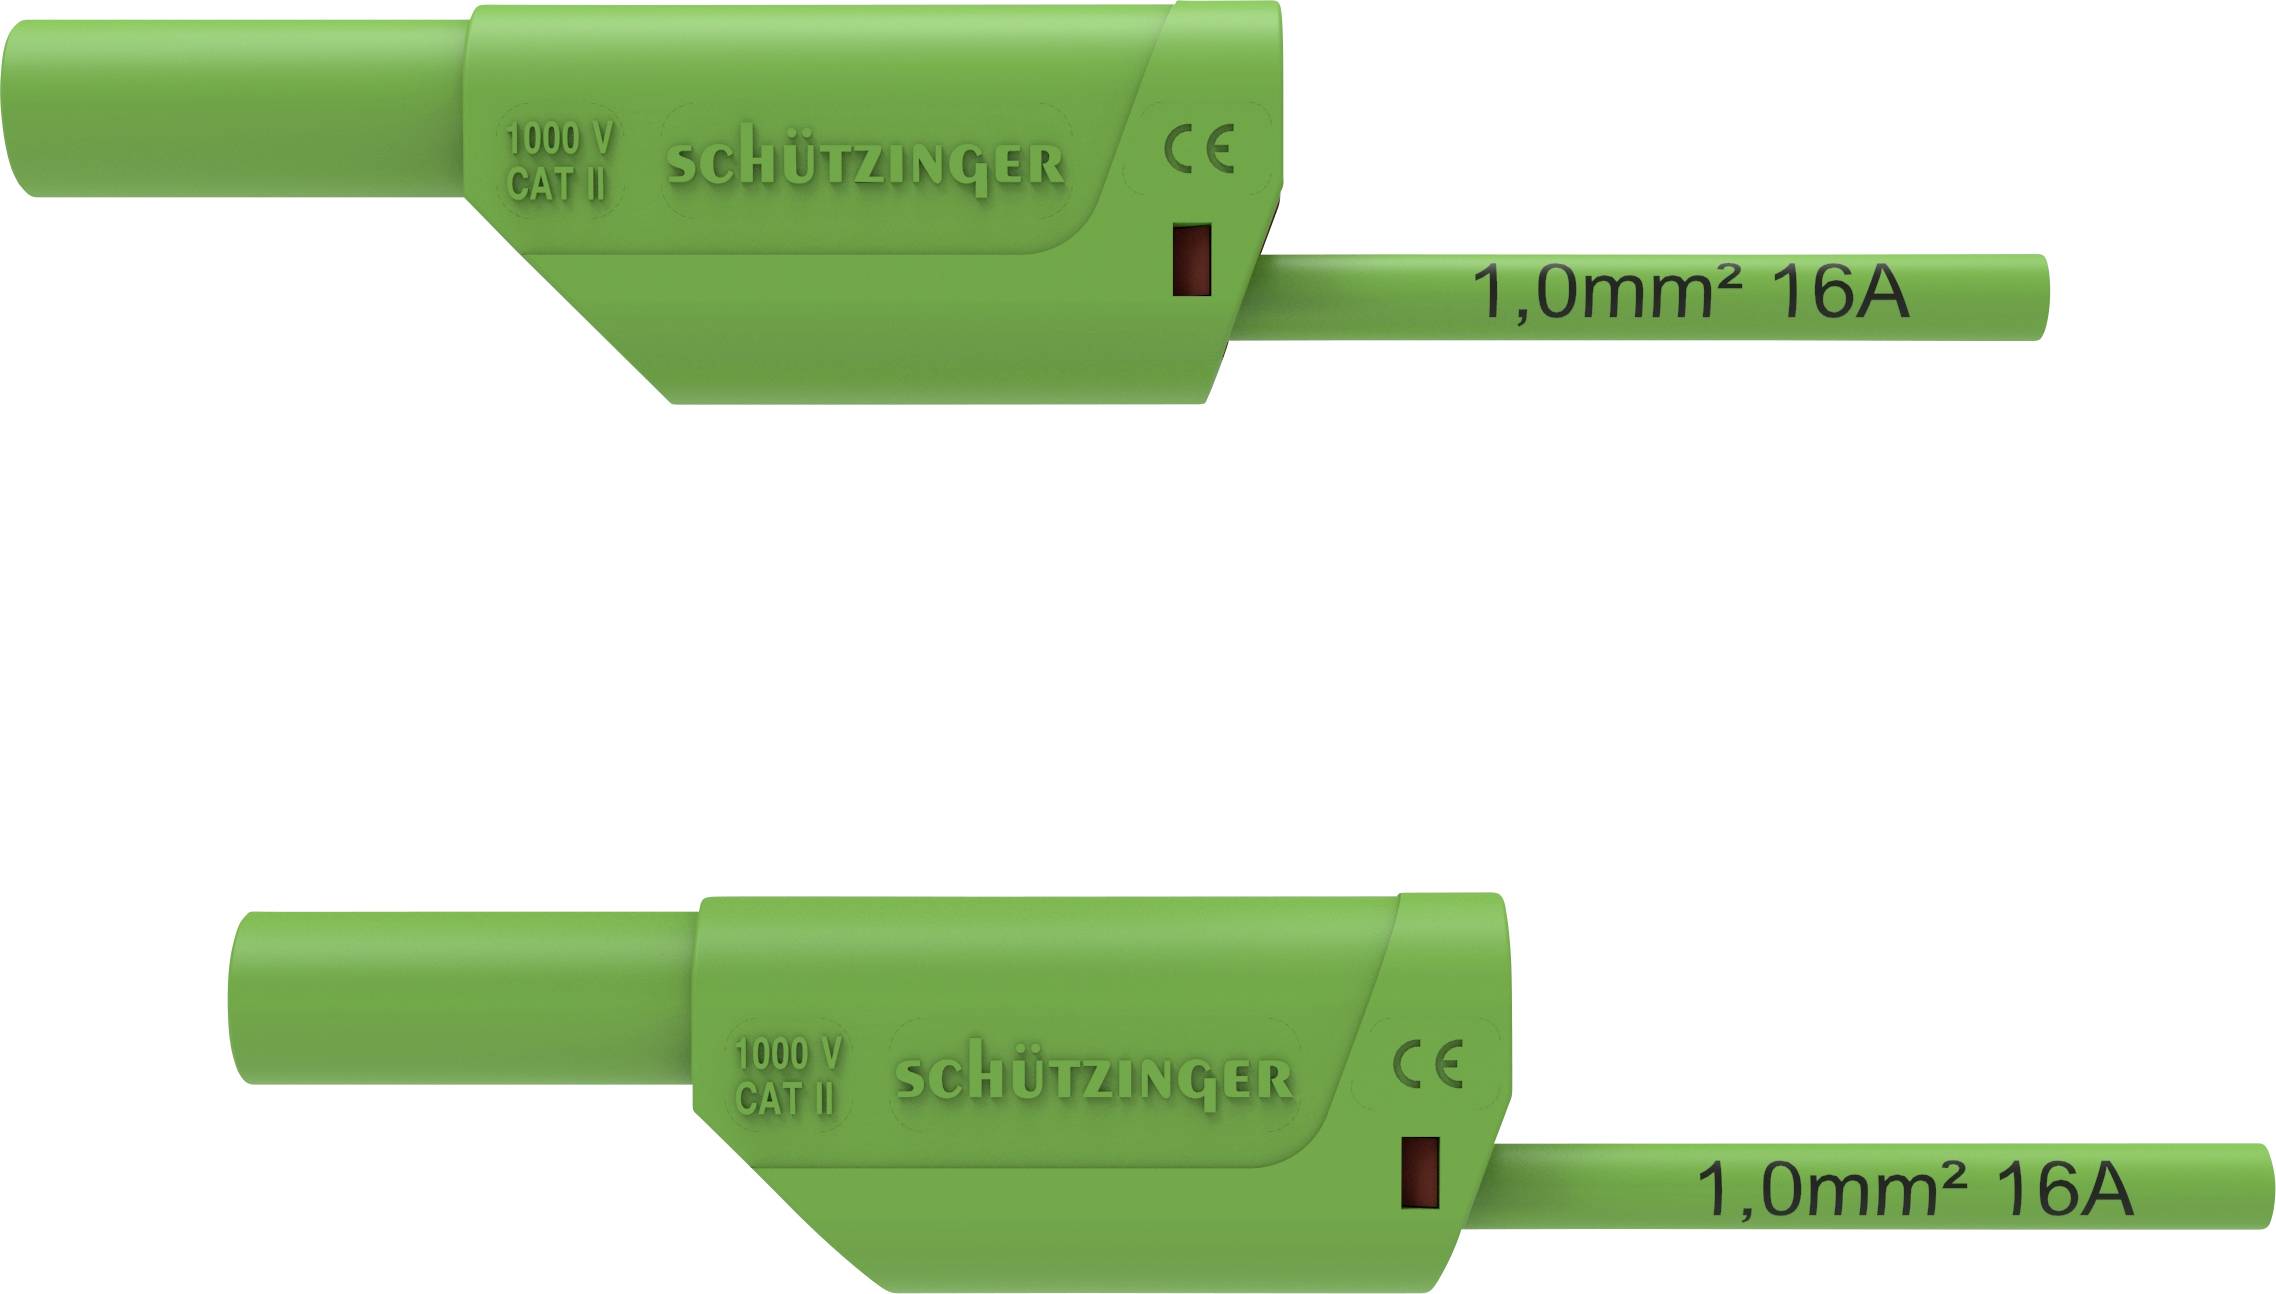 SCHÜTZINGER VSFK 8500 / 1 / 200 / GN Sicherheits-Messleitung [4 mm-Stecker - 4 mm-Stecker] 200.